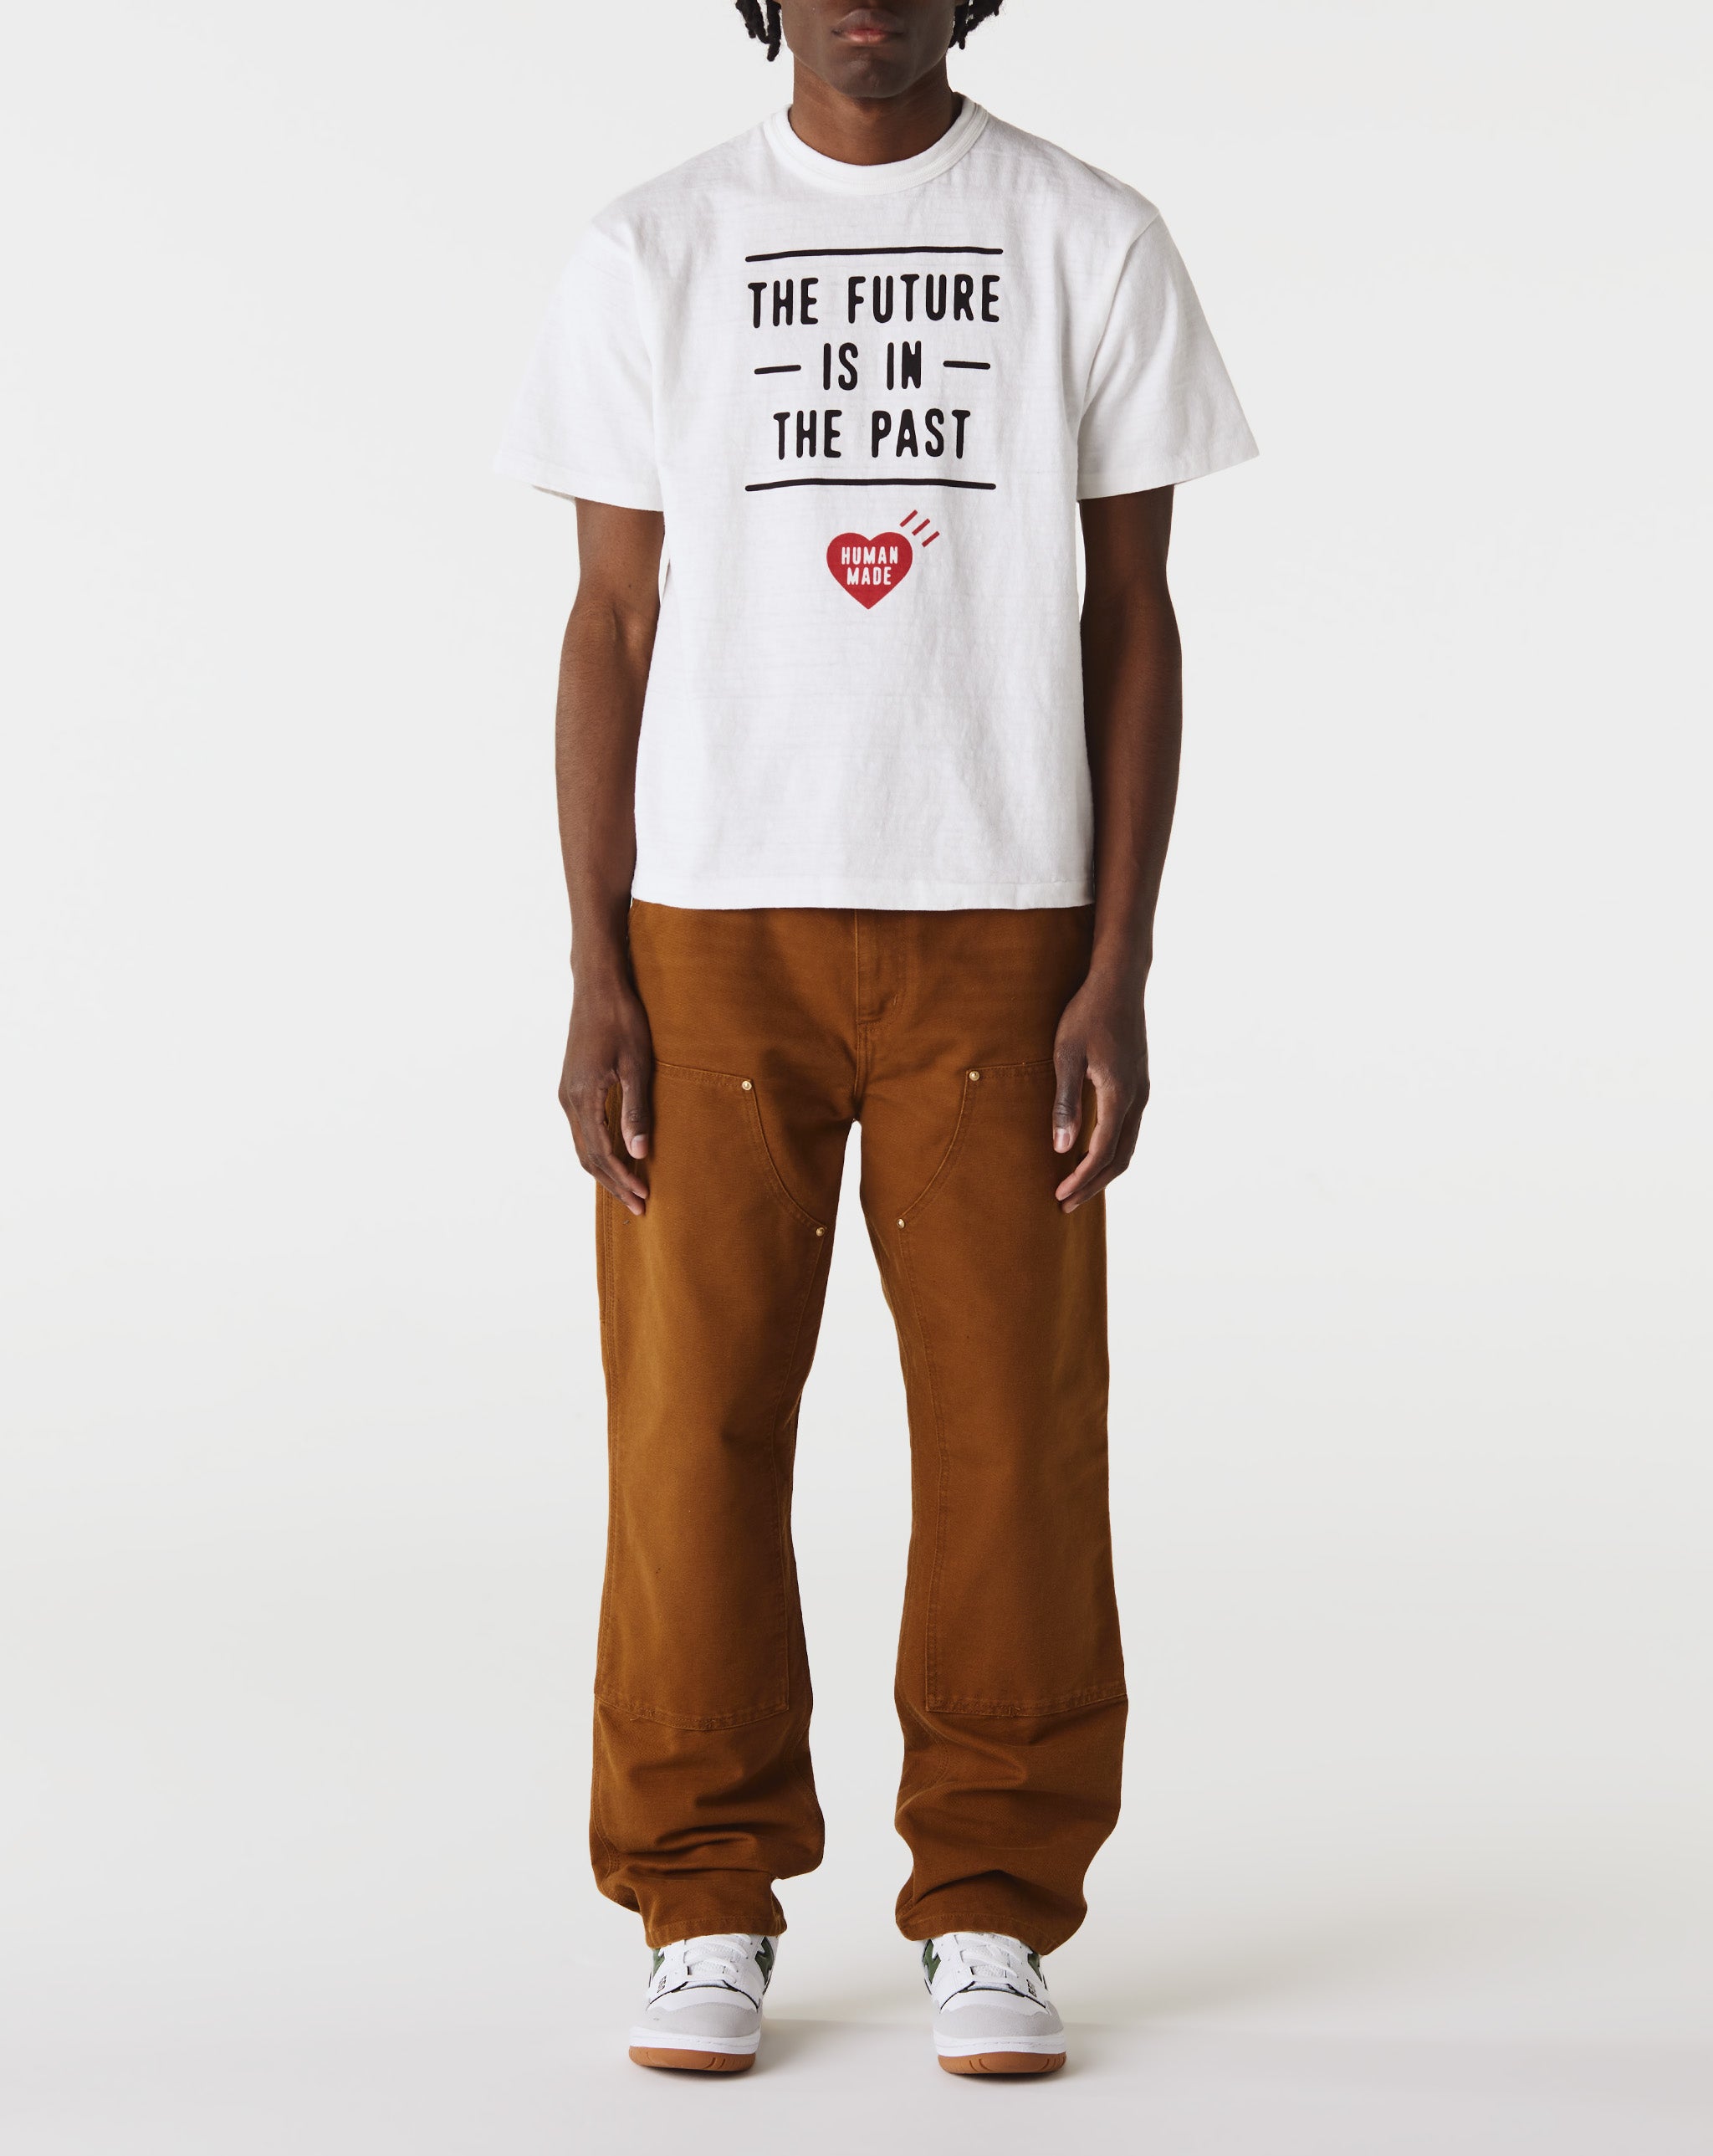 【特価定番】humanmade GRAPHIC T-SHIRT #03 2XL Tシャツ/カットソー(半袖/袖なし)